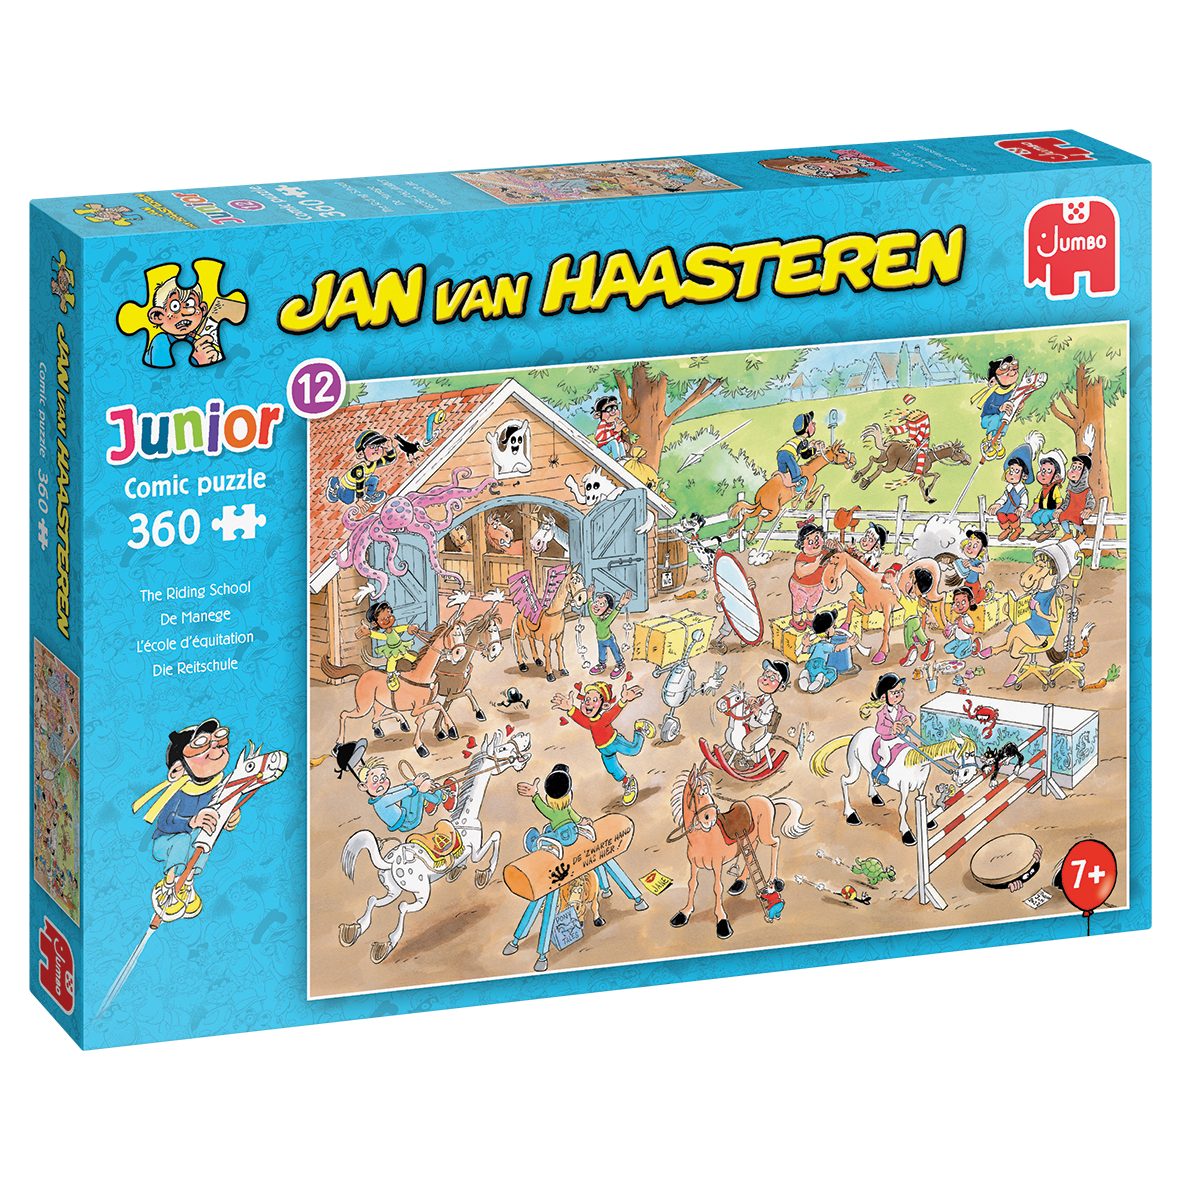 Jumbo Spiele Puzzle Jumbo van Junior Reitschule, 12 Haasteren Puzzleteile Jan 360 20083